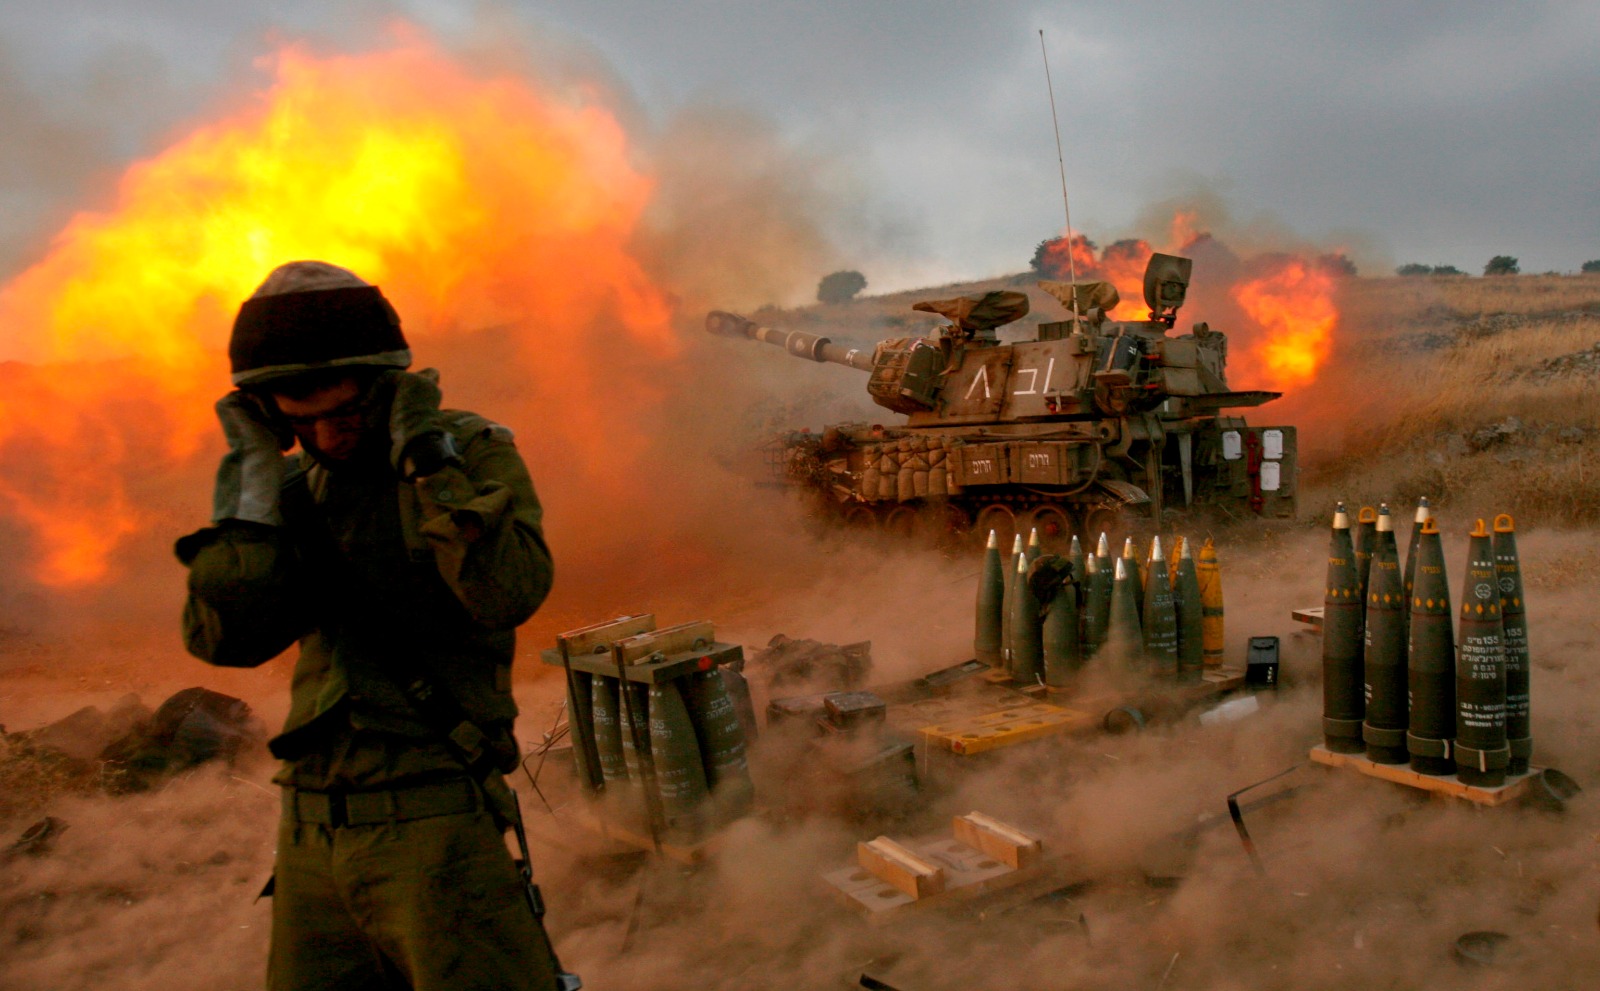 جندي إسرائيلي أثناء إطلاق قذائف على جنوب لبنان خلال حرب 2006 بين غسرائيل وحزب الله. 13 يوليو 2006